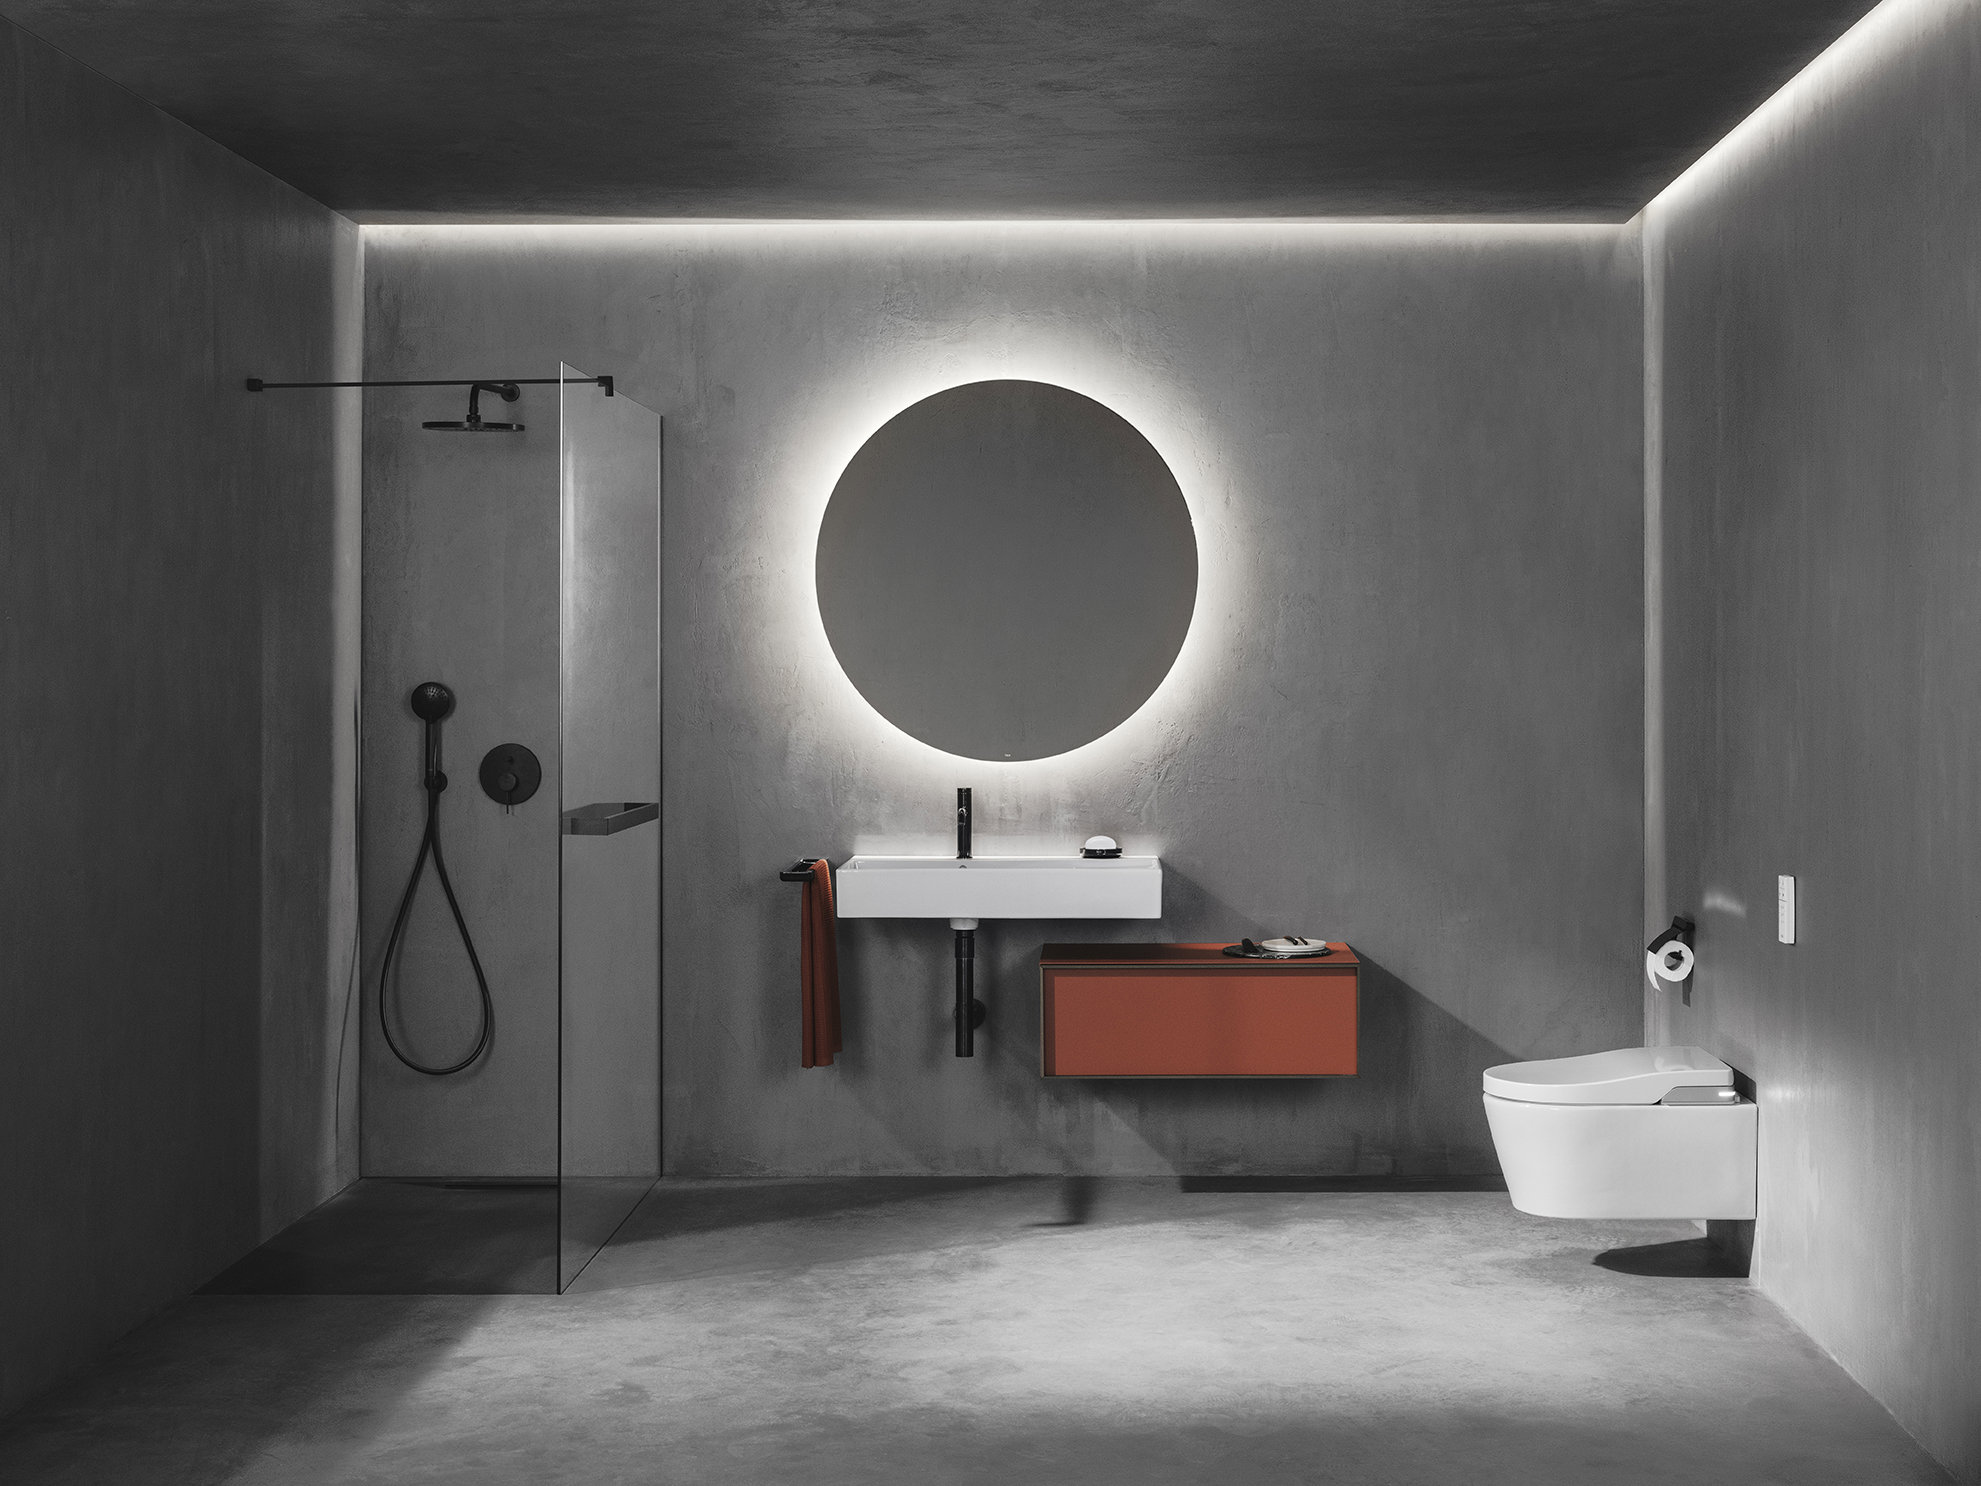 CHE PO'A - El mueble para baño es capaz de transformar un ambiente sencillo  en uno moderno y elegante, sus características añaden personalidad y  belleza al espacio, aportando comodidad y perfección. El